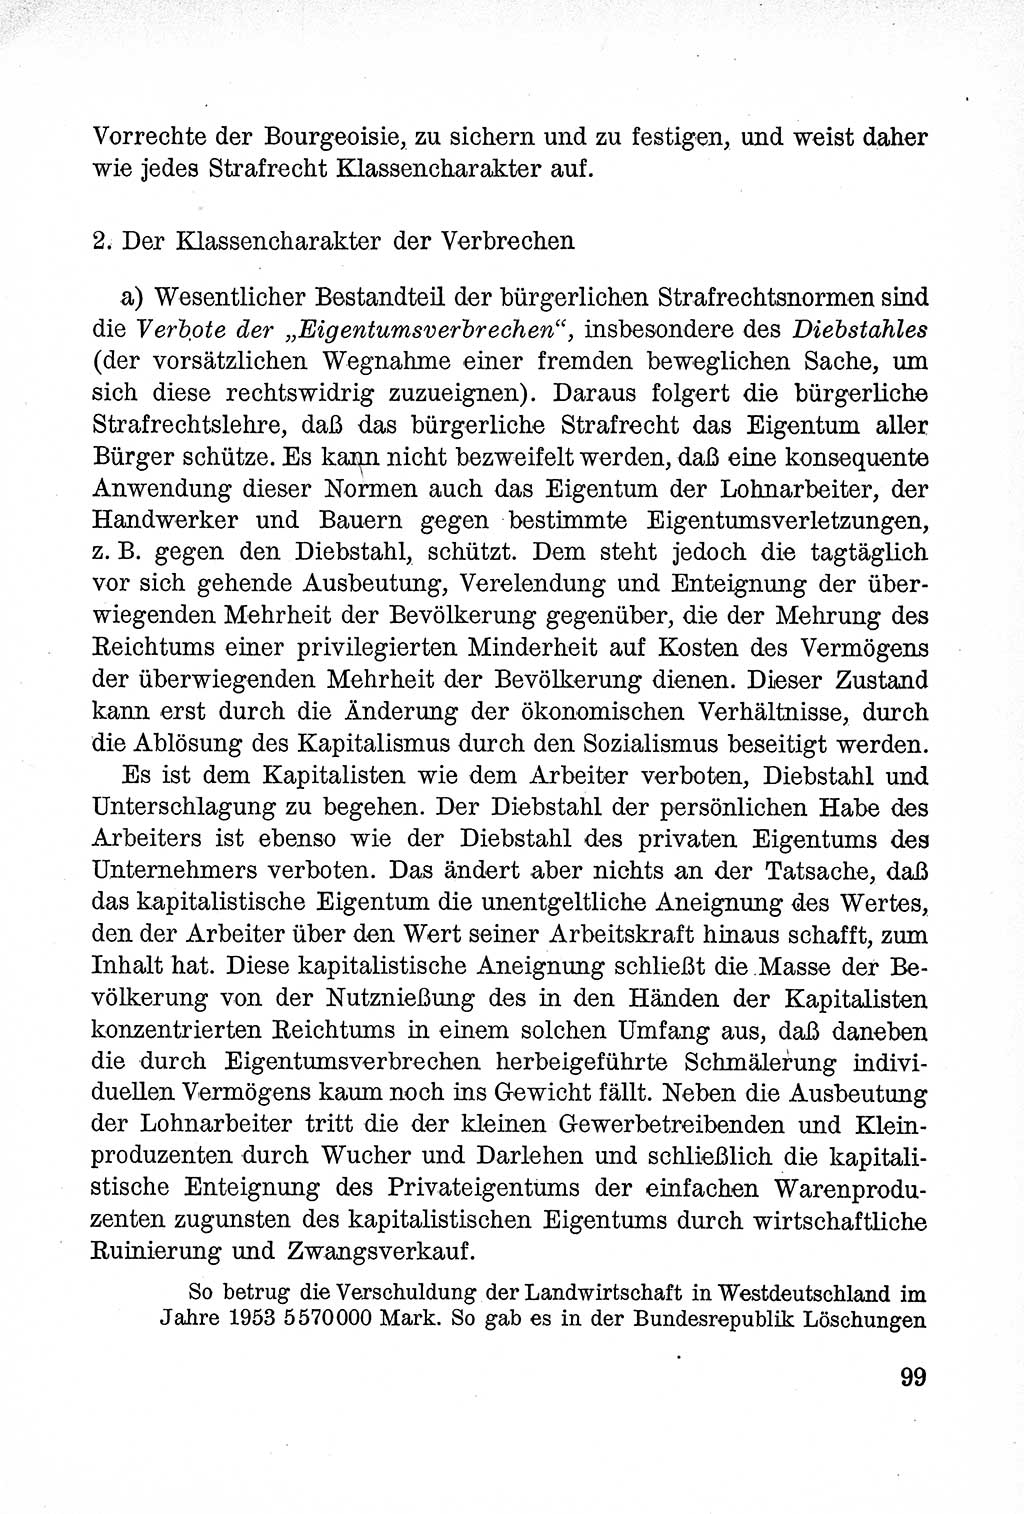 Lehrbuch des Strafrechts der Deutschen Demokratischen Republik (DDR), Allgemeiner Teil 1957, Seite 99 (Lb. Strafr. DDR AT 1957, S. 99)